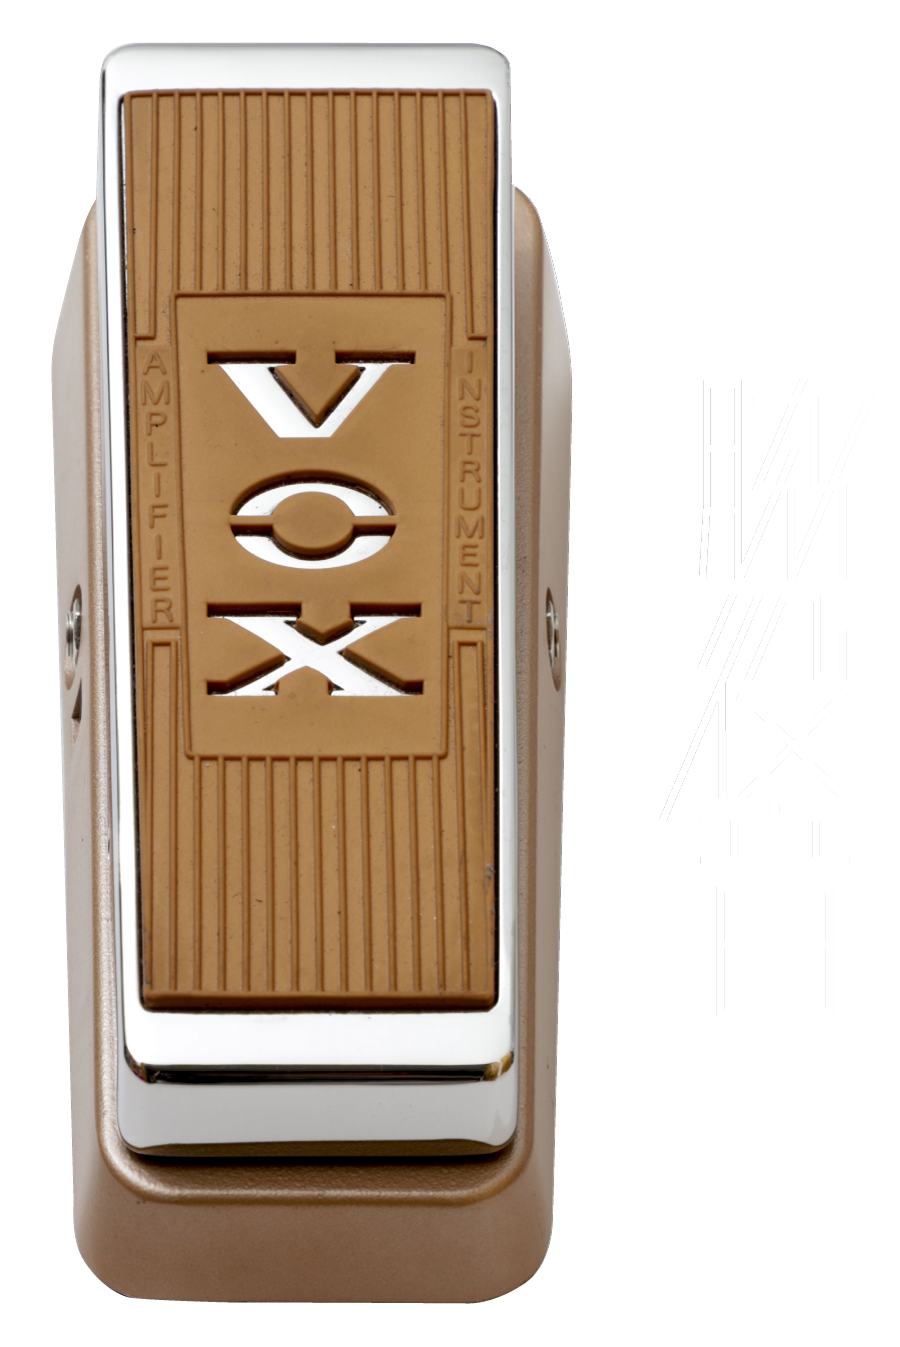 VOX×Char オリジナルワウ・ペダル「WACATCON(ワキャコン)」 - ZICCA AX